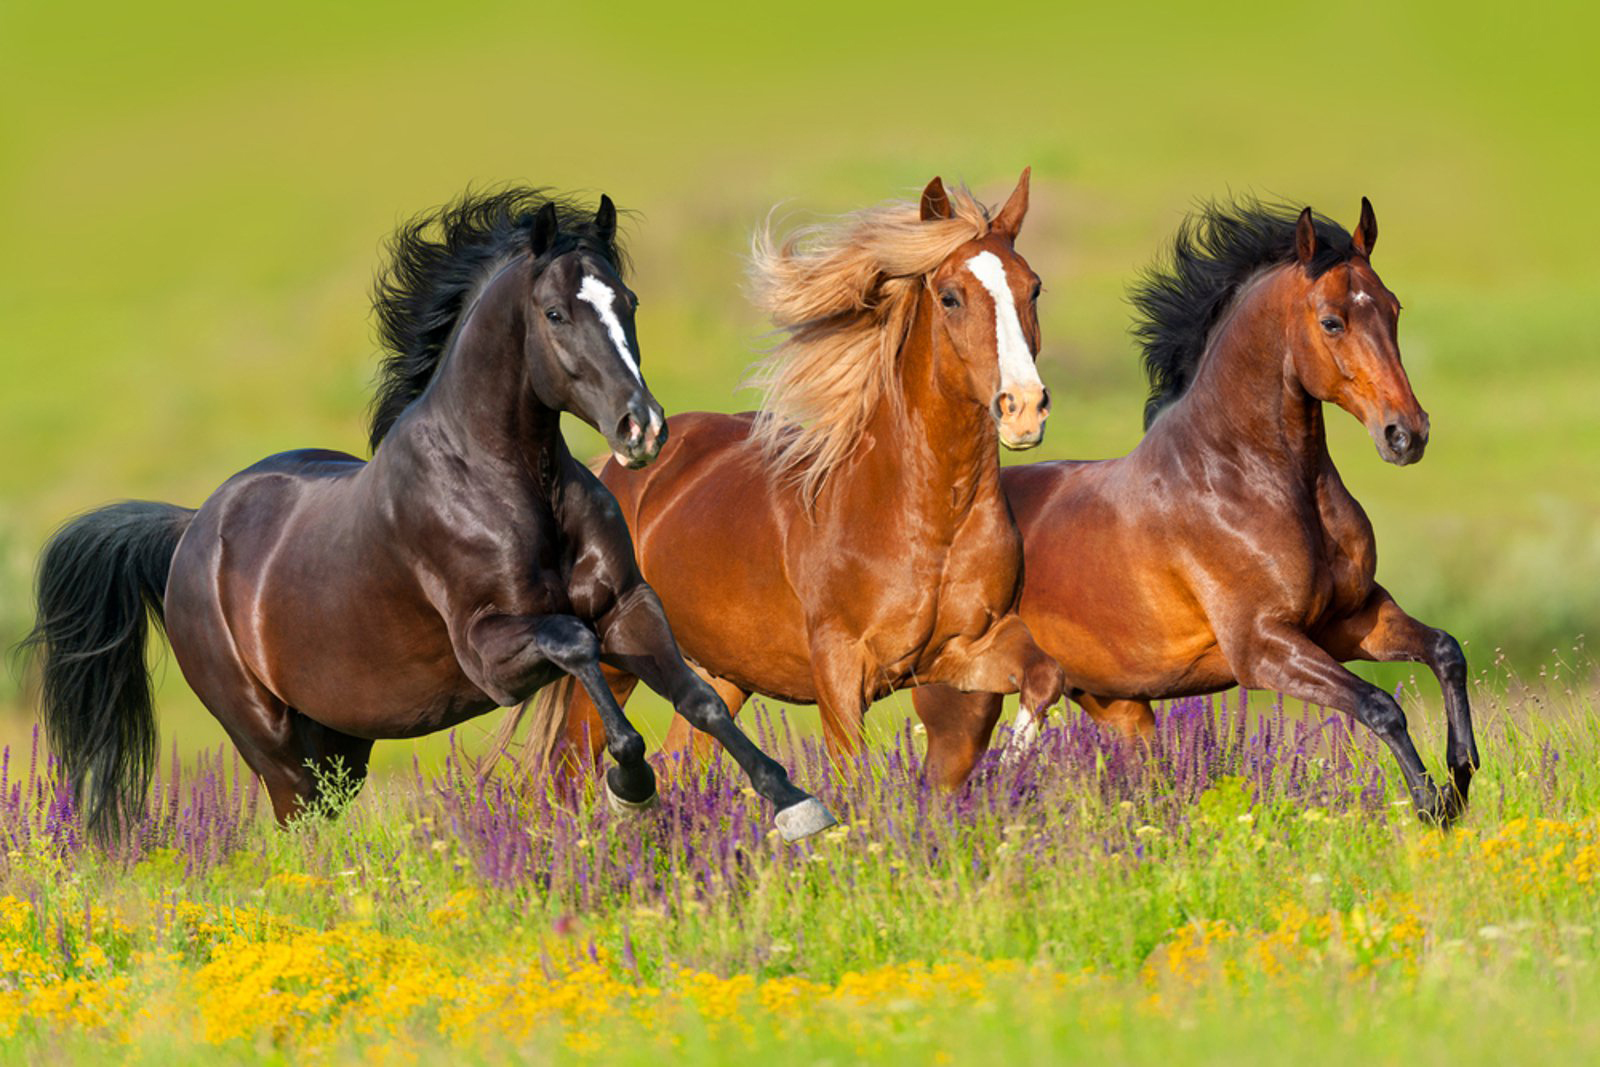 Ο Δήμος Γρεβενών δημοπρατεί 30 άλογα (ελευθέρας βοσκής) που περιήλθαν στην περιουσία του